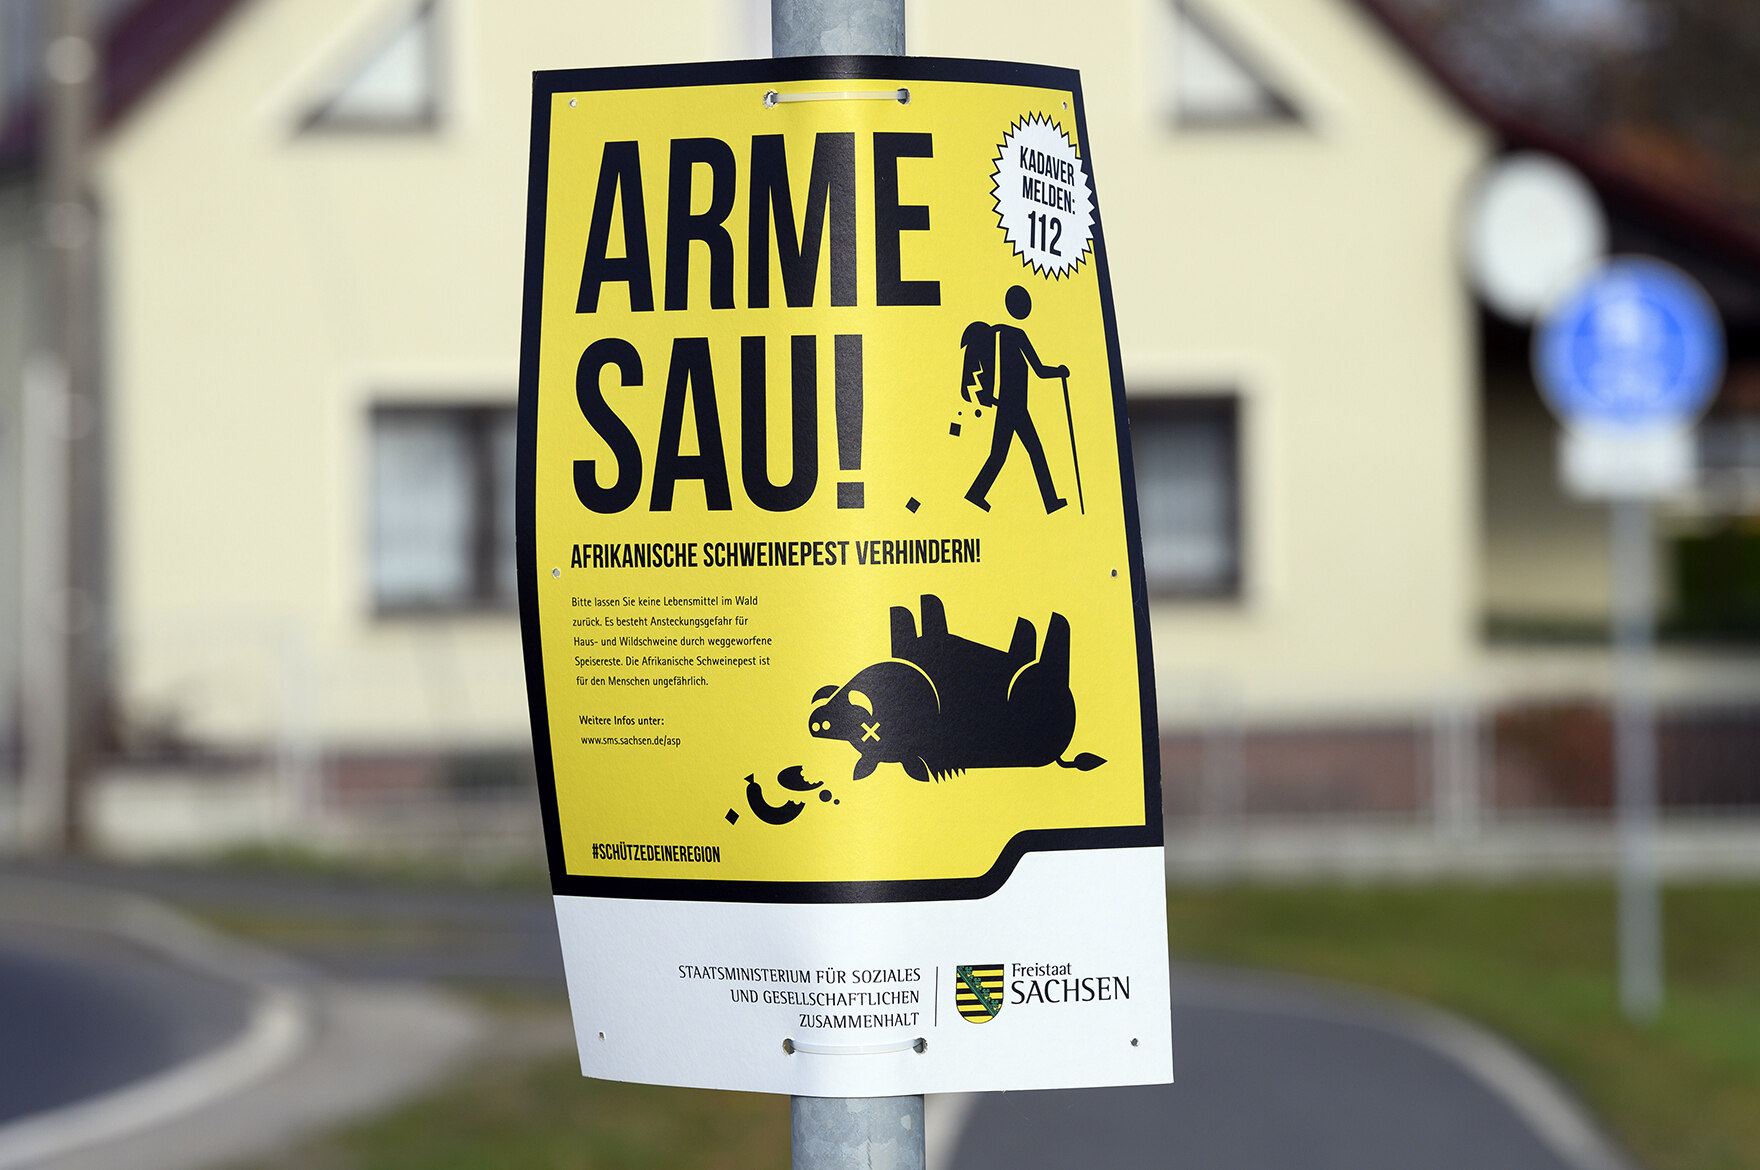 Bild eines Kampagnenschildes "Arme Sau" am Straßenrand